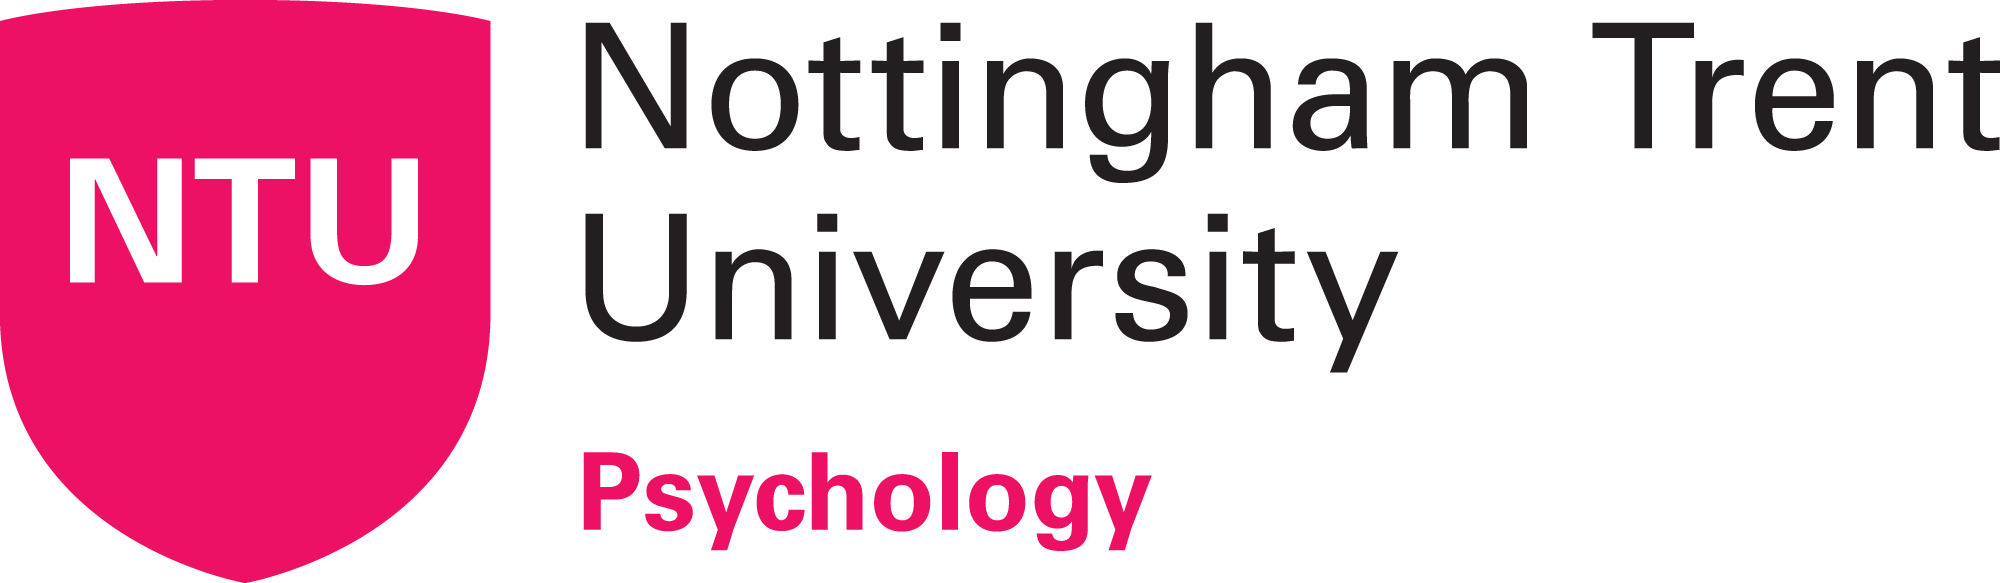 https://www.ntu.ac.uk/__data/assets/image/0033/2246487/Psychology_logo_RGB.png